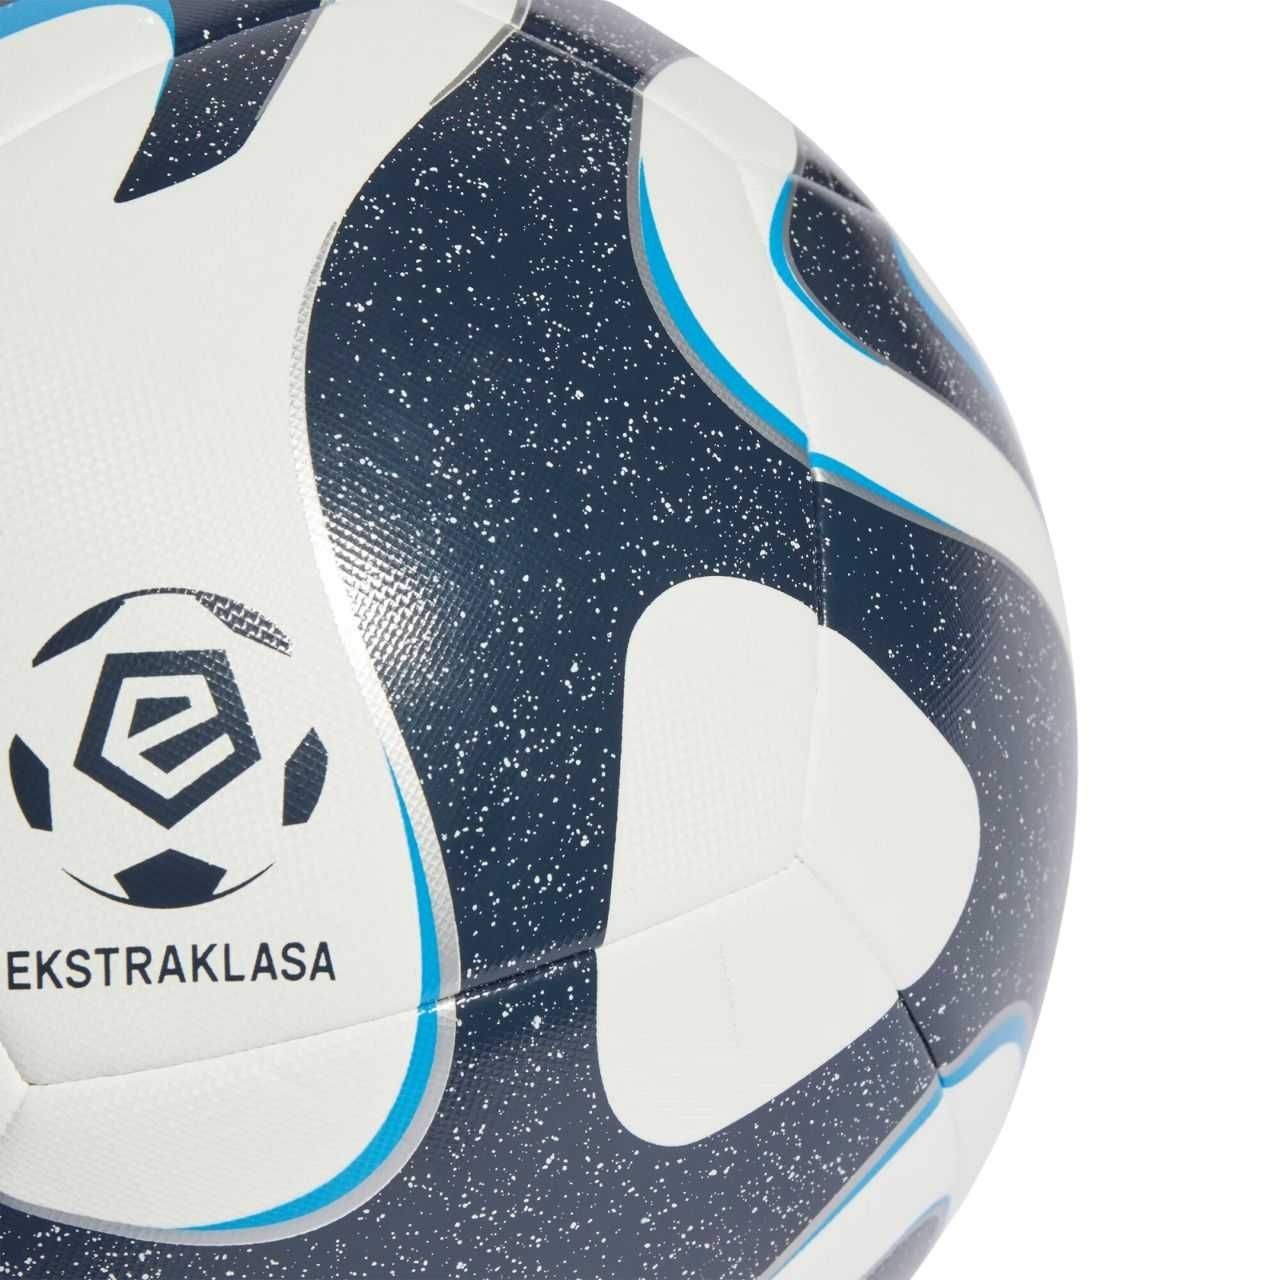 Piłka nożna adidas Ekstraklasa Training biało-granatowa IQ4932 roz.4